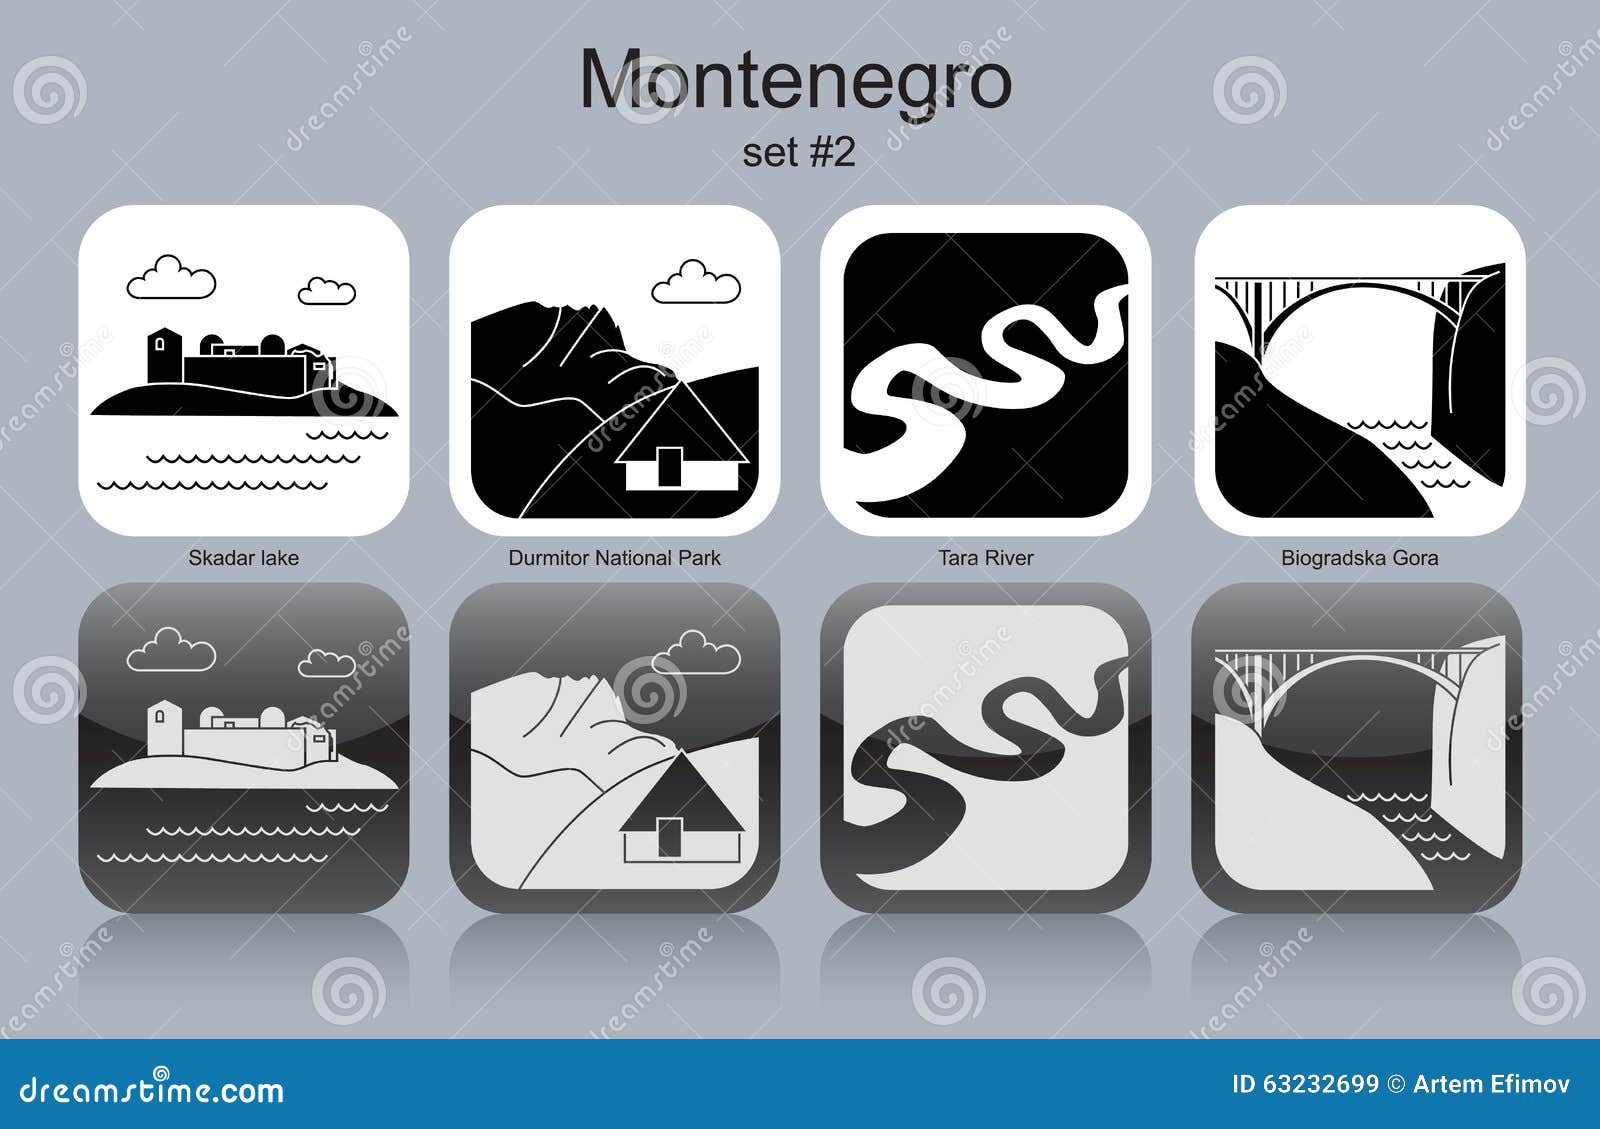 icons of montenegro